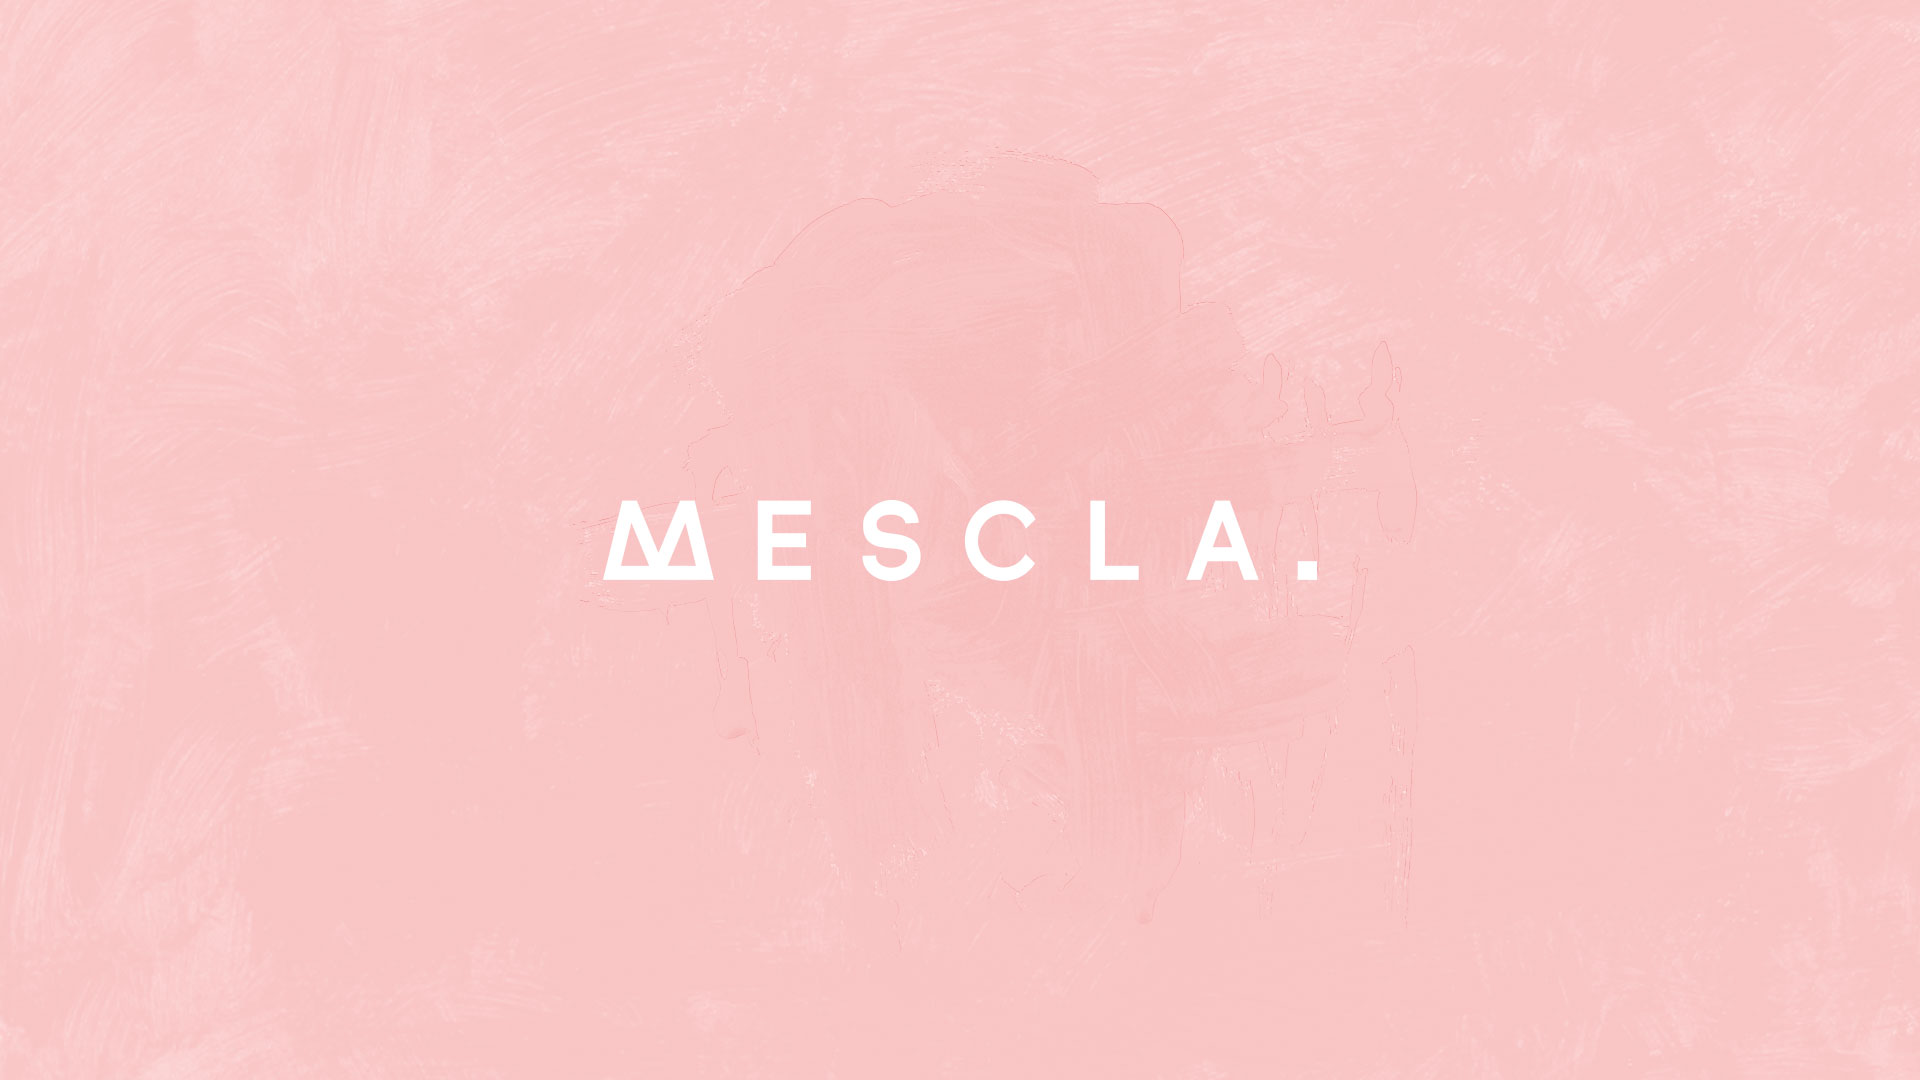 Mescla